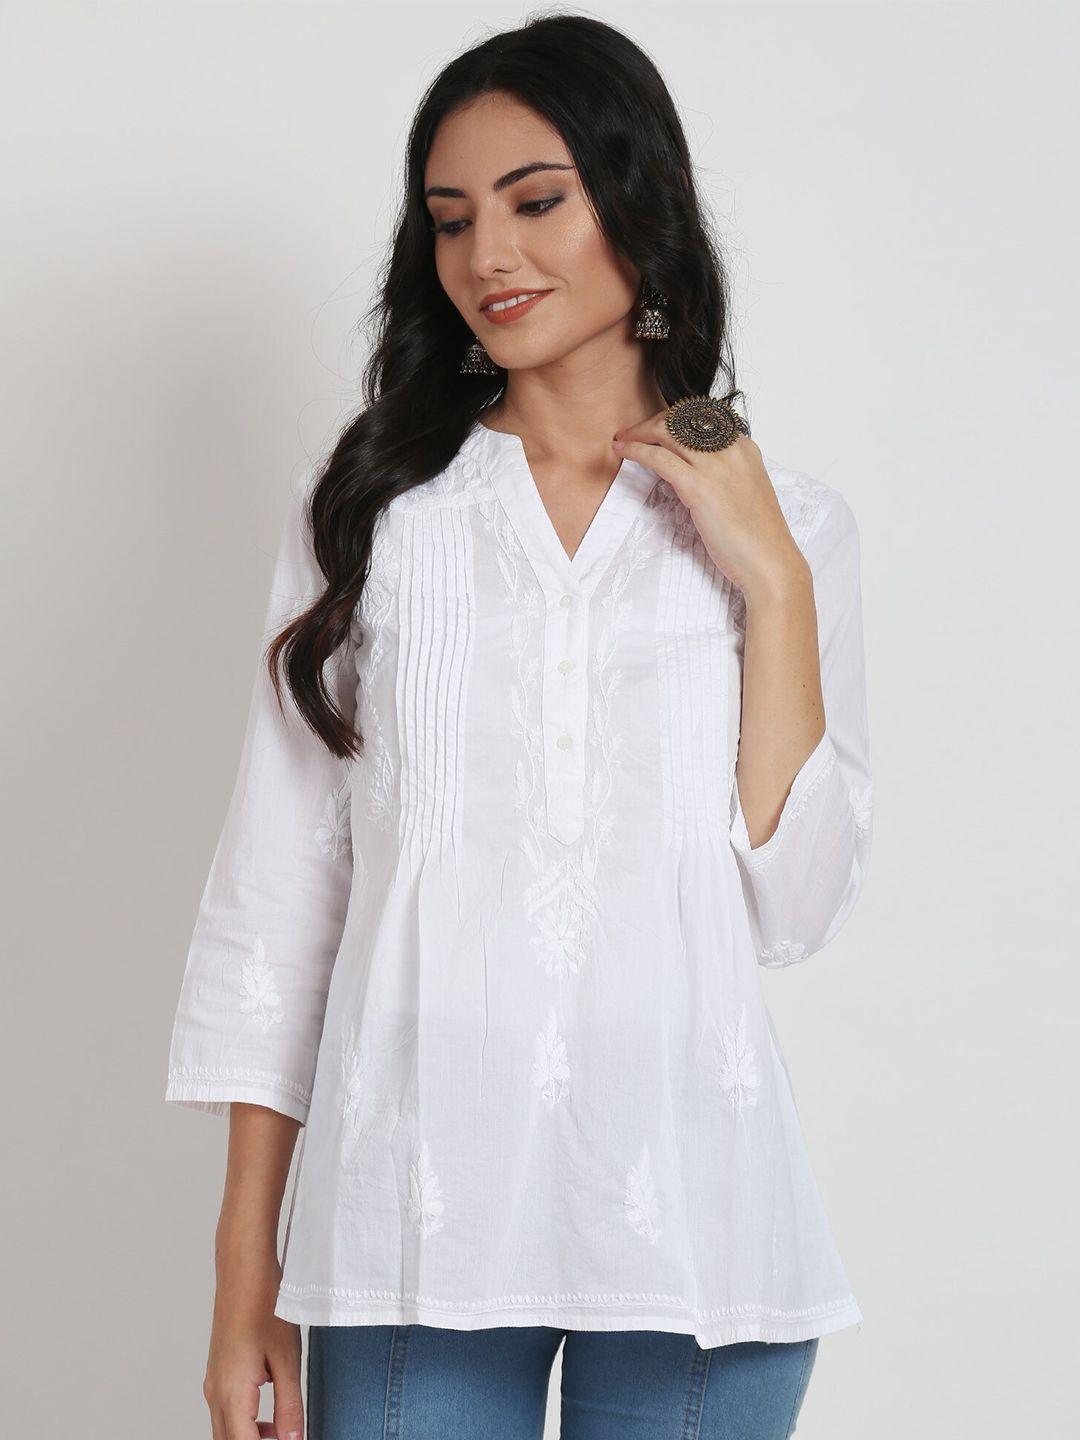 paramount-chikan-white-ethnic-motifs-embroidered-chikankari-pure-cotton-kurti